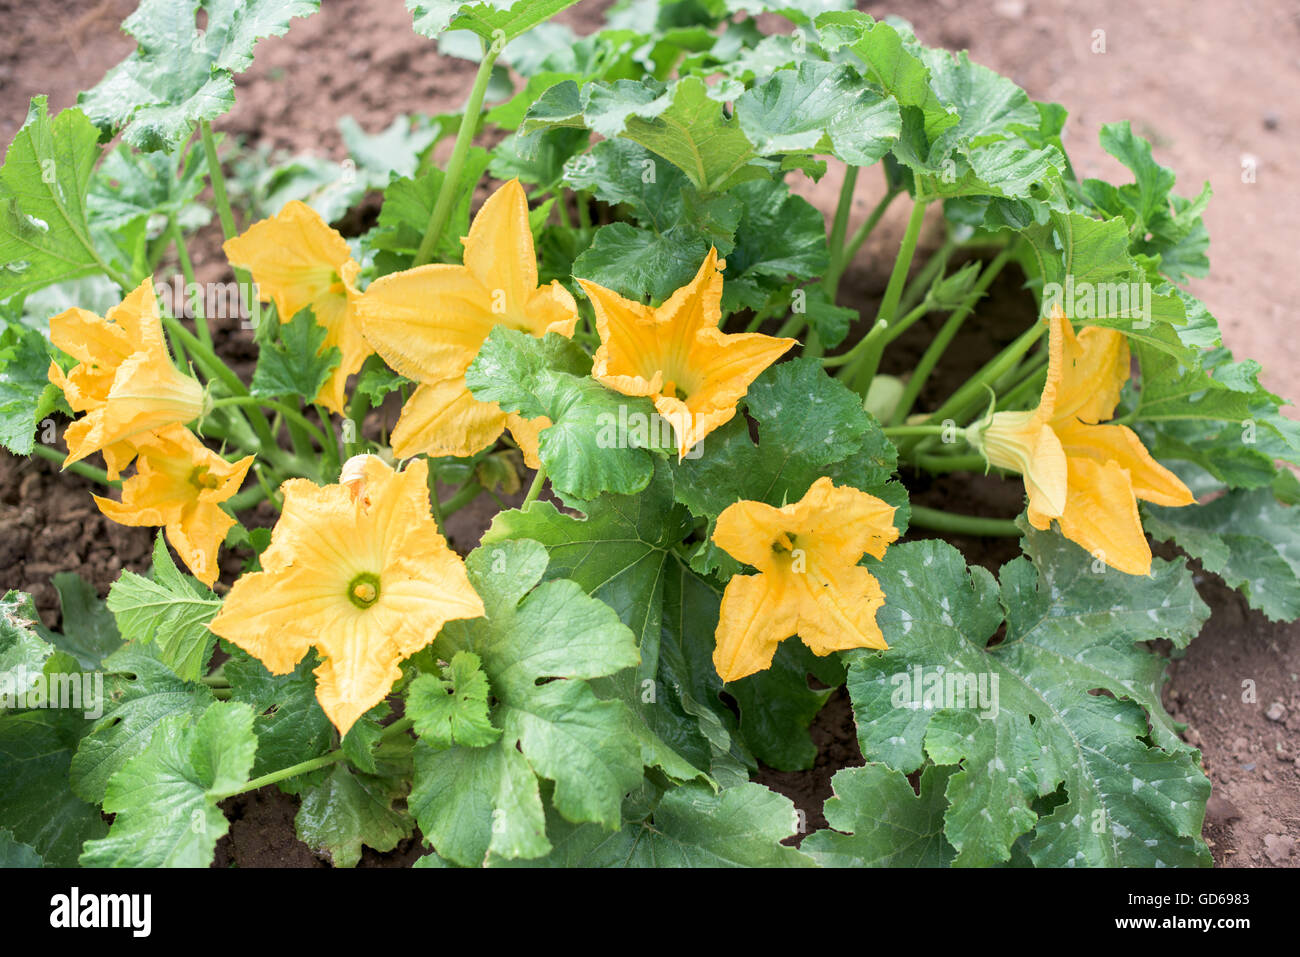 Impianto di zucchine con un sacco di fiori di colore giallo Foto Stock